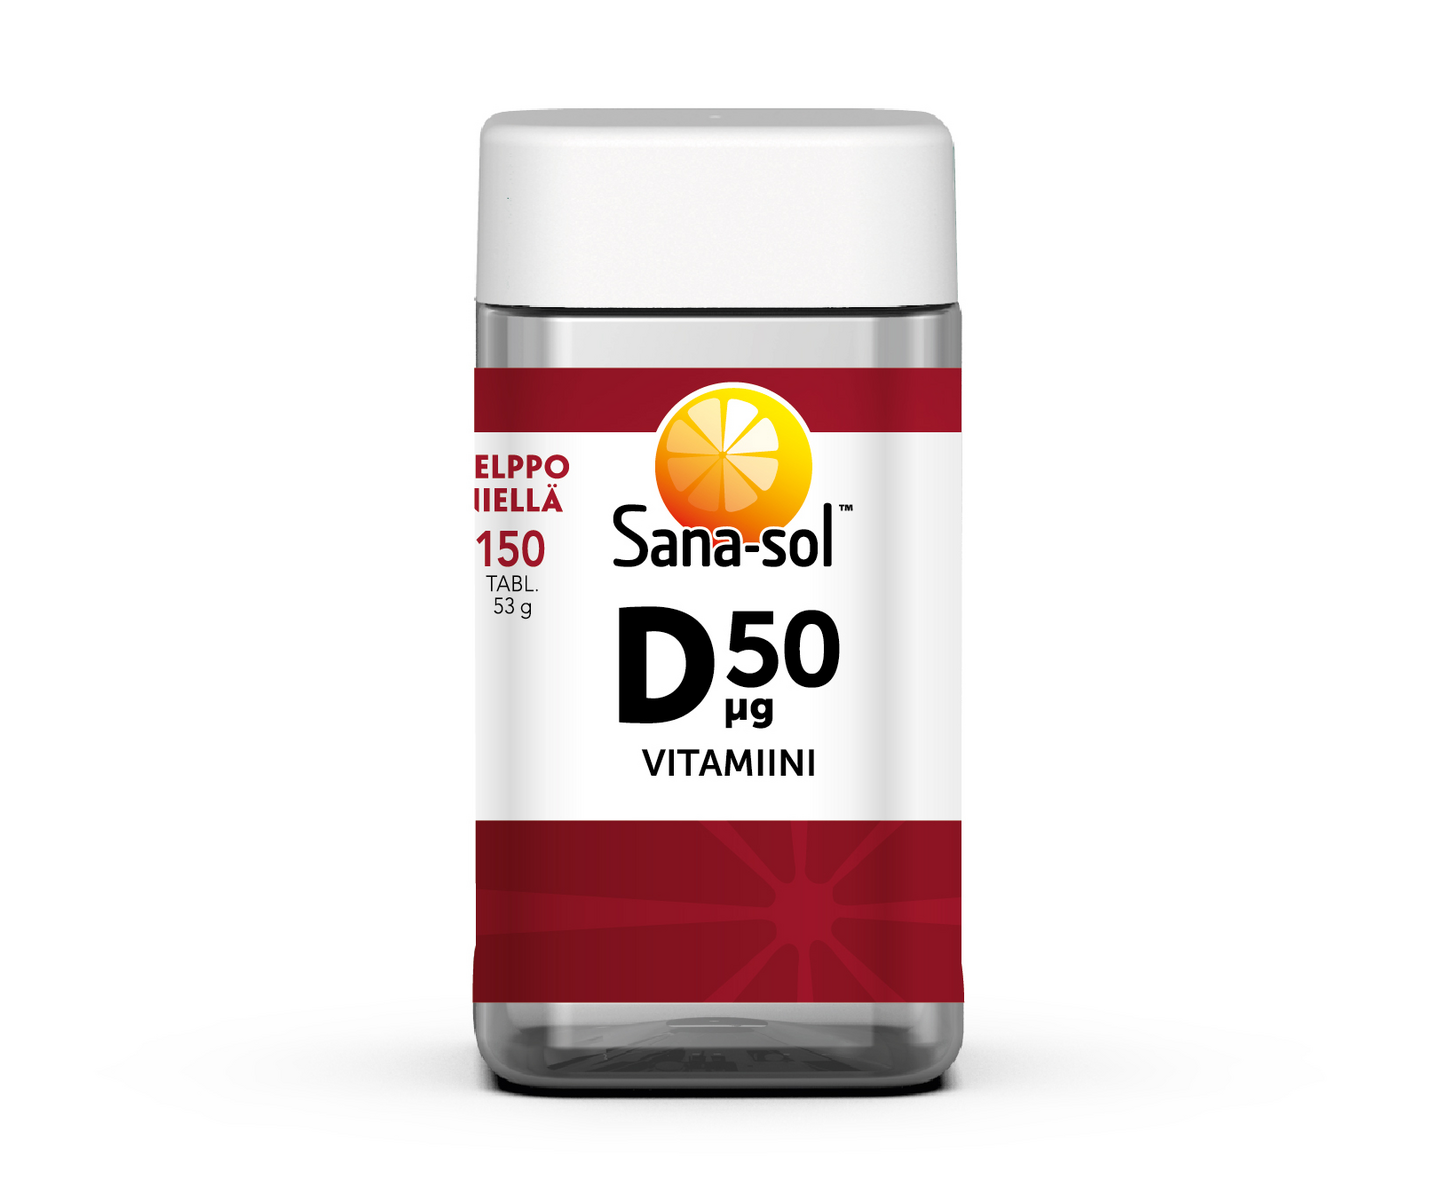 Sana-sol D-vitamiini 50µg 150tabl/53g